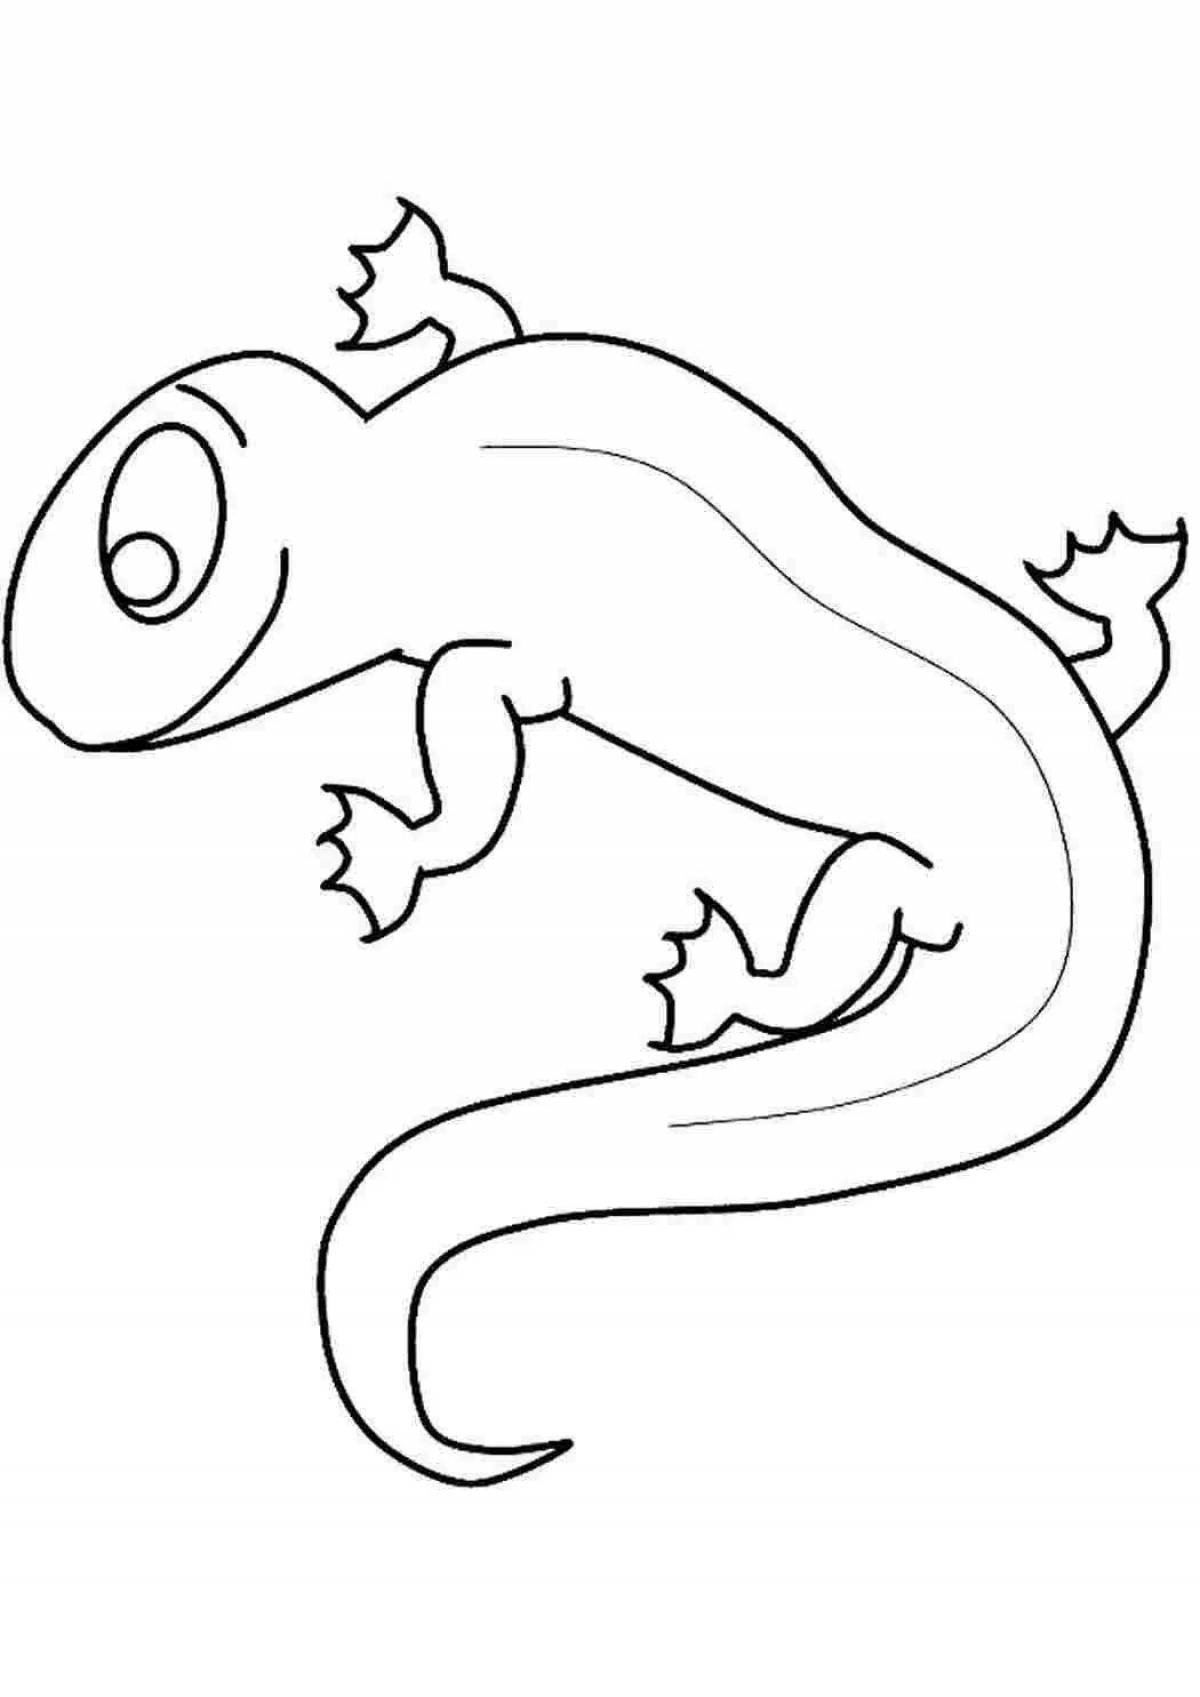 Как нарисовать ящерицу ребенку